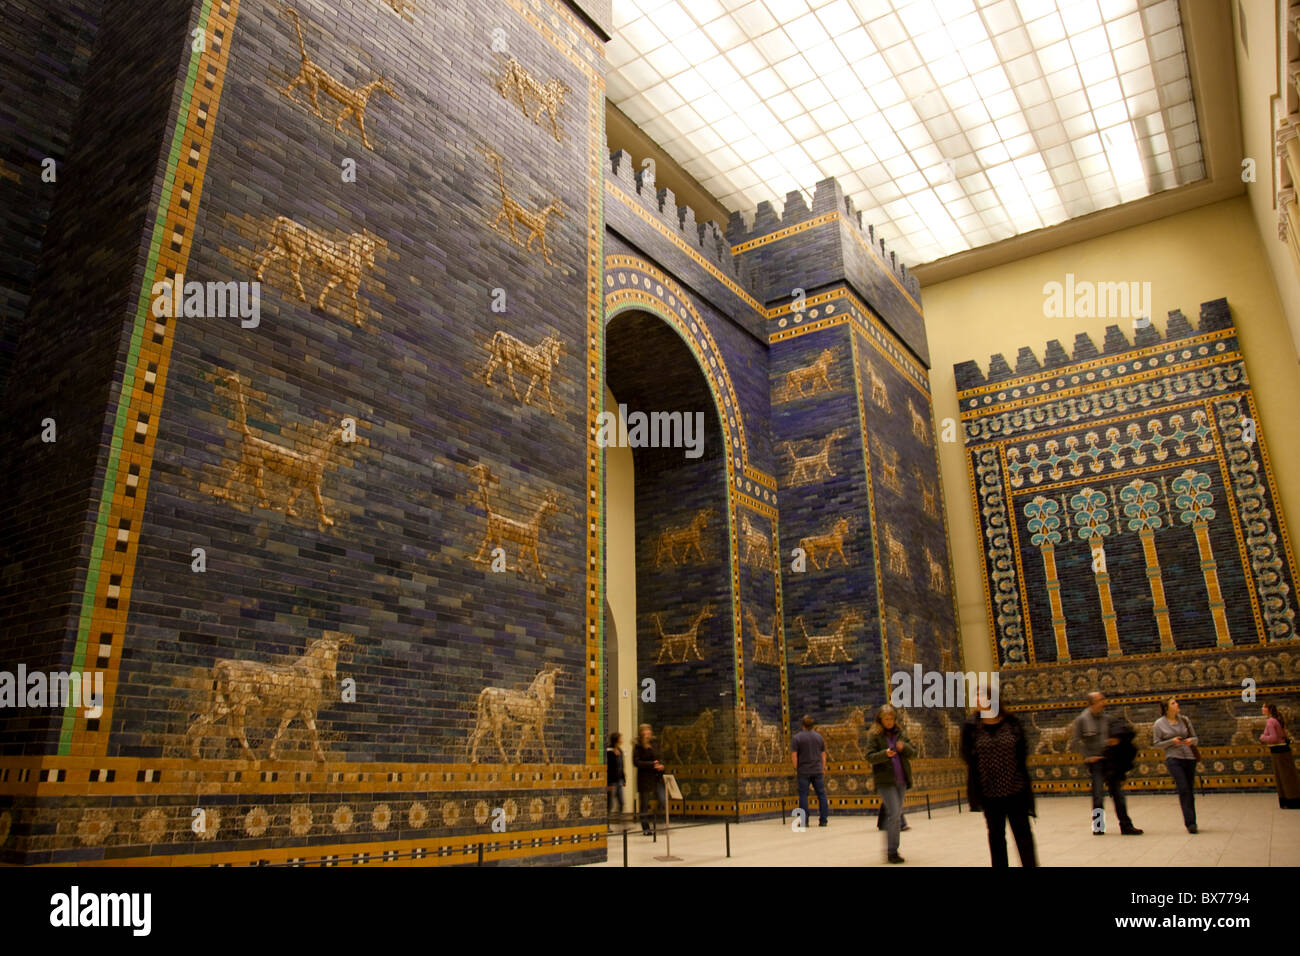 La porte d'Ishtar de Babylone au Musée Pergamon de Berlin, Berlin, Germany, Europe Banque D'Images